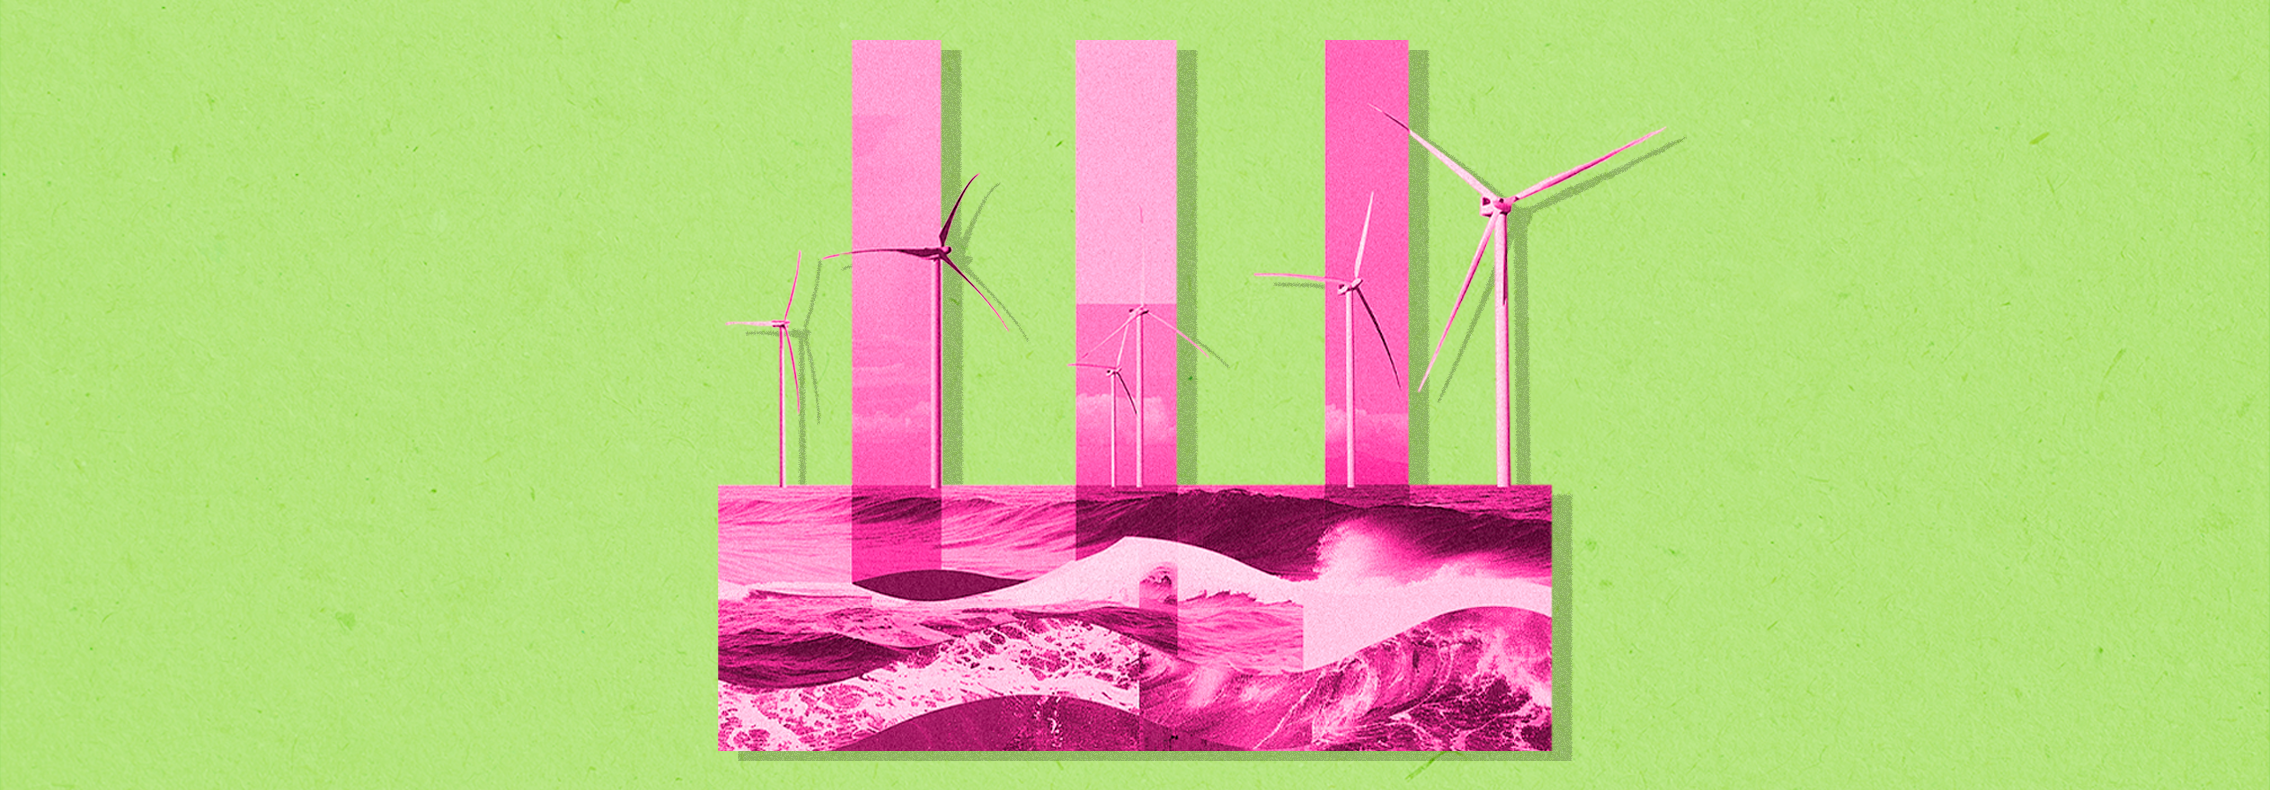 Os novos ventos da indústria de energia eólica offshore